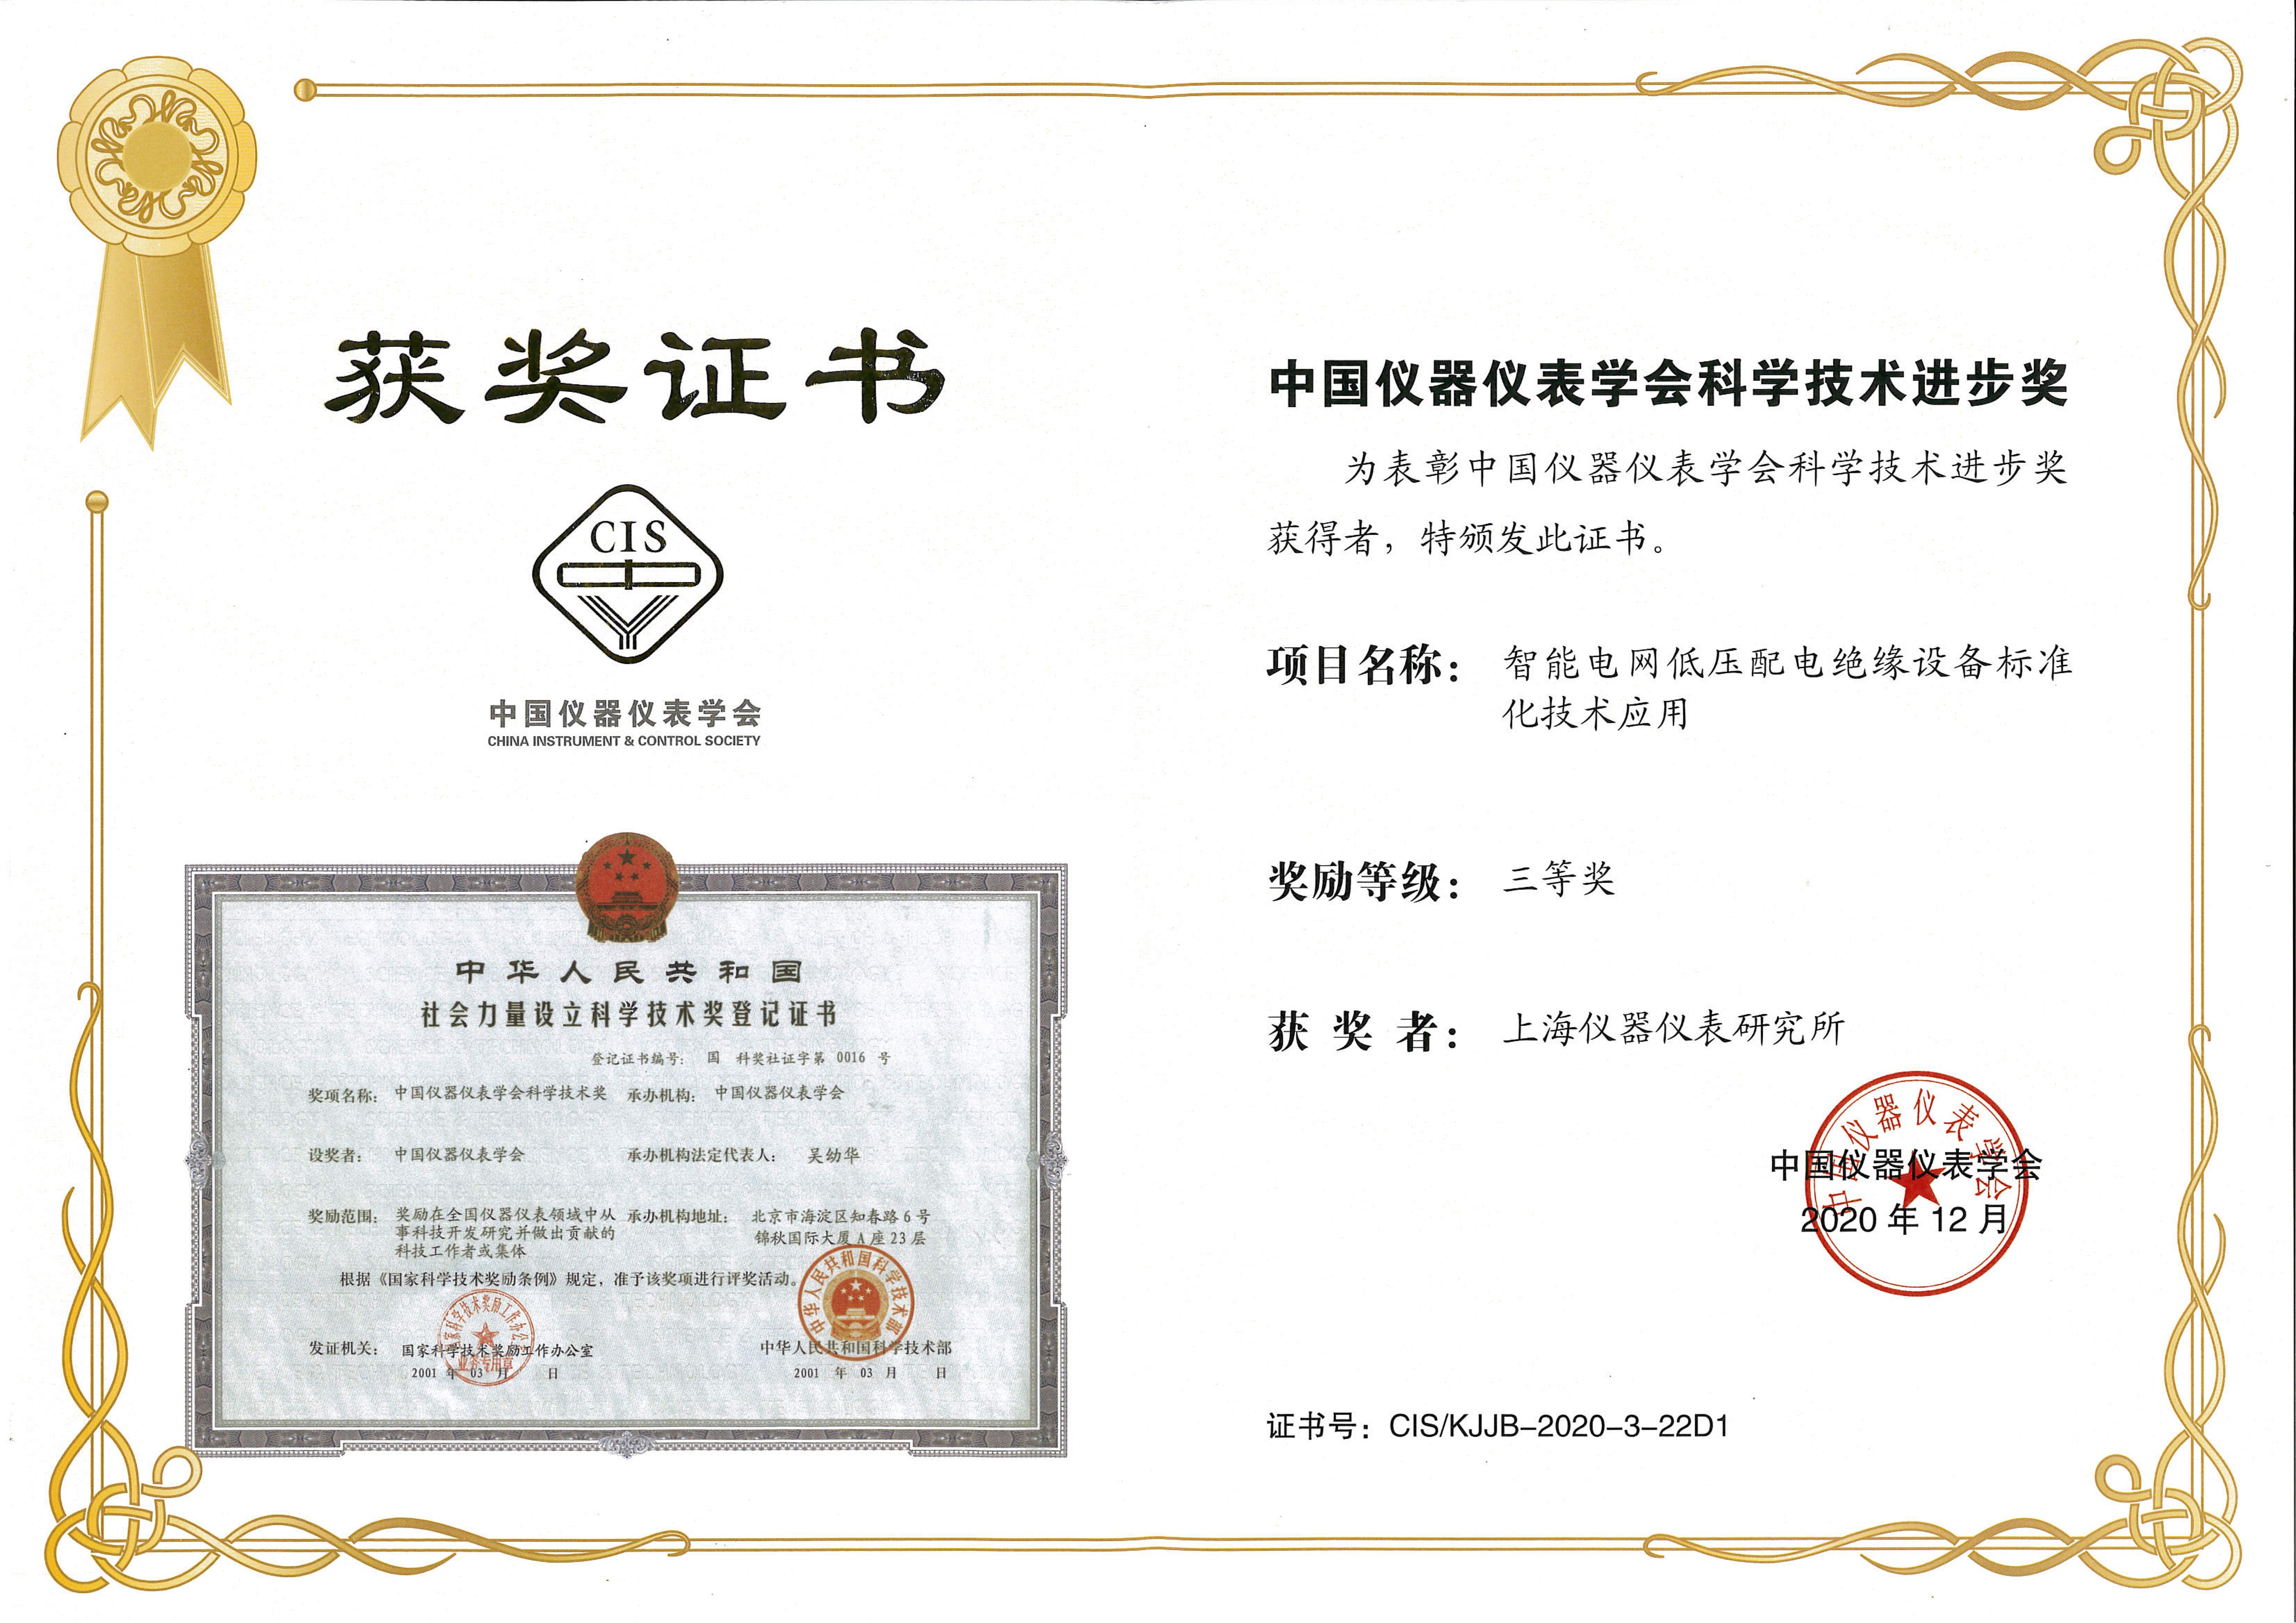  中國儀器儀表學會科學技術進步獎